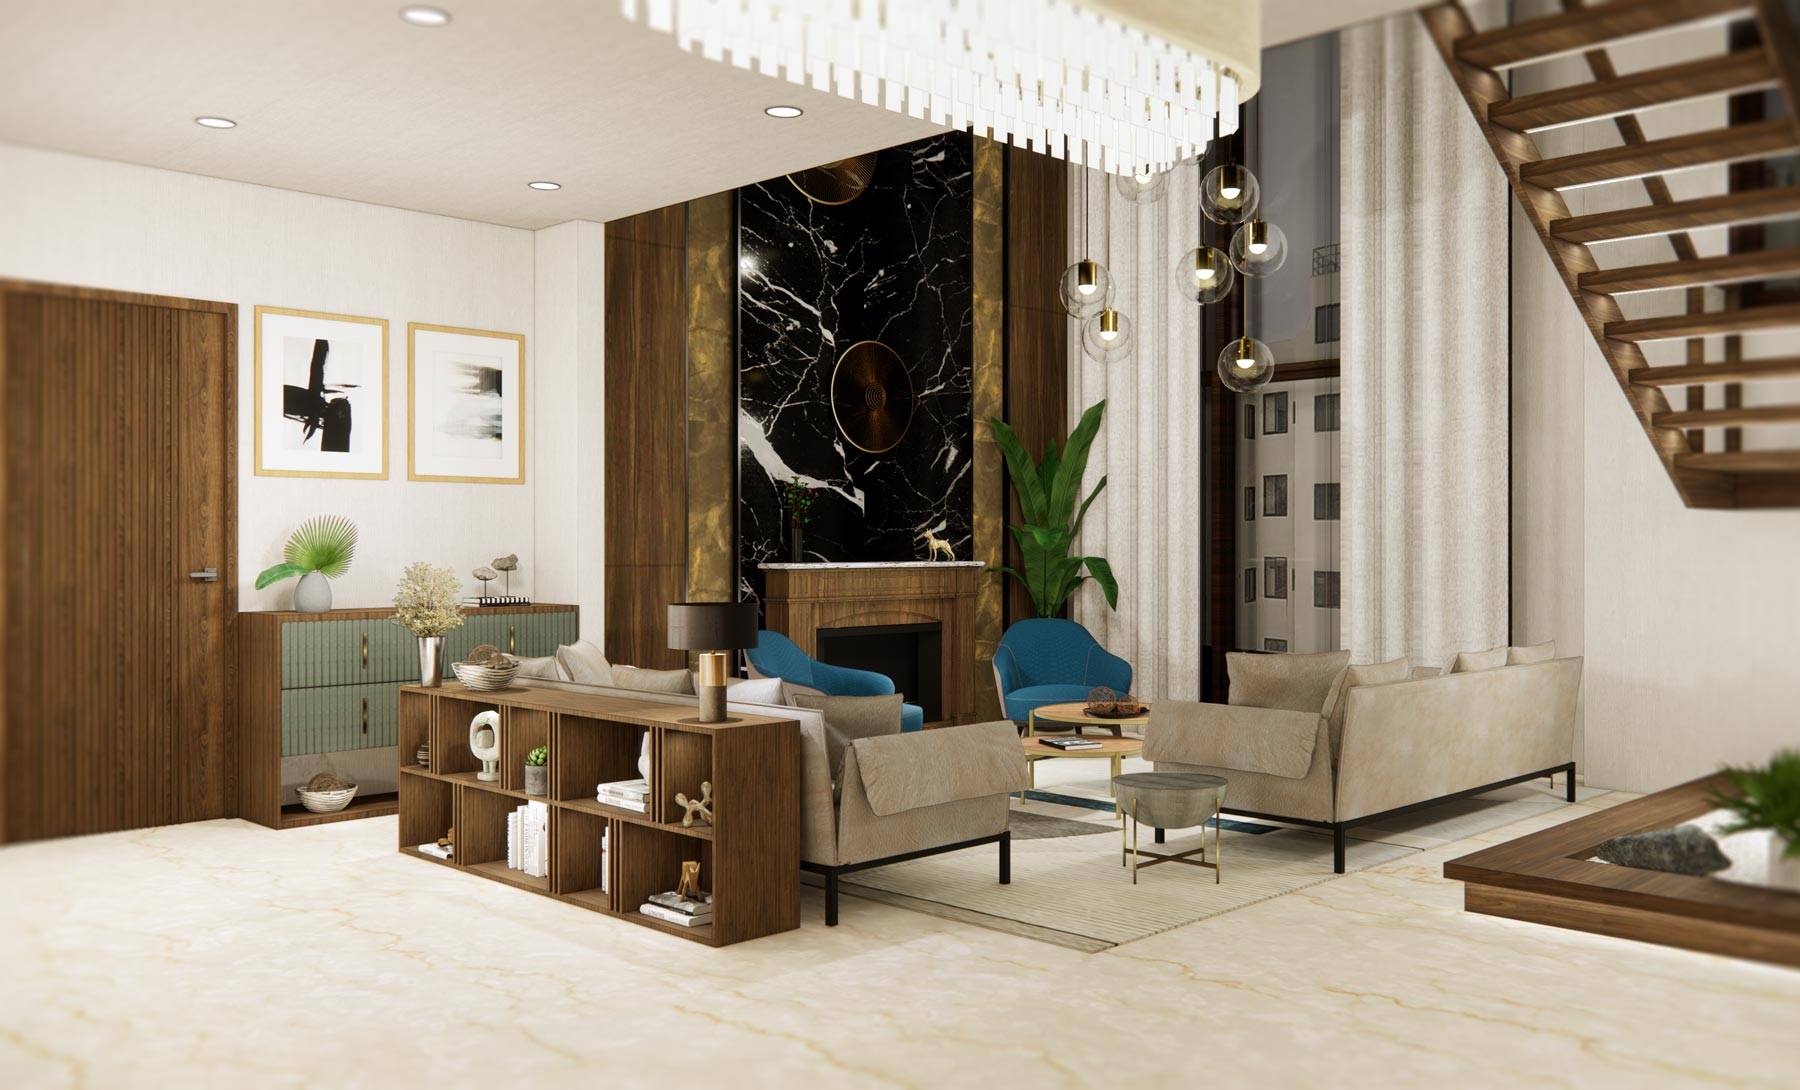 Kyrah Design, Living Room Interior Design